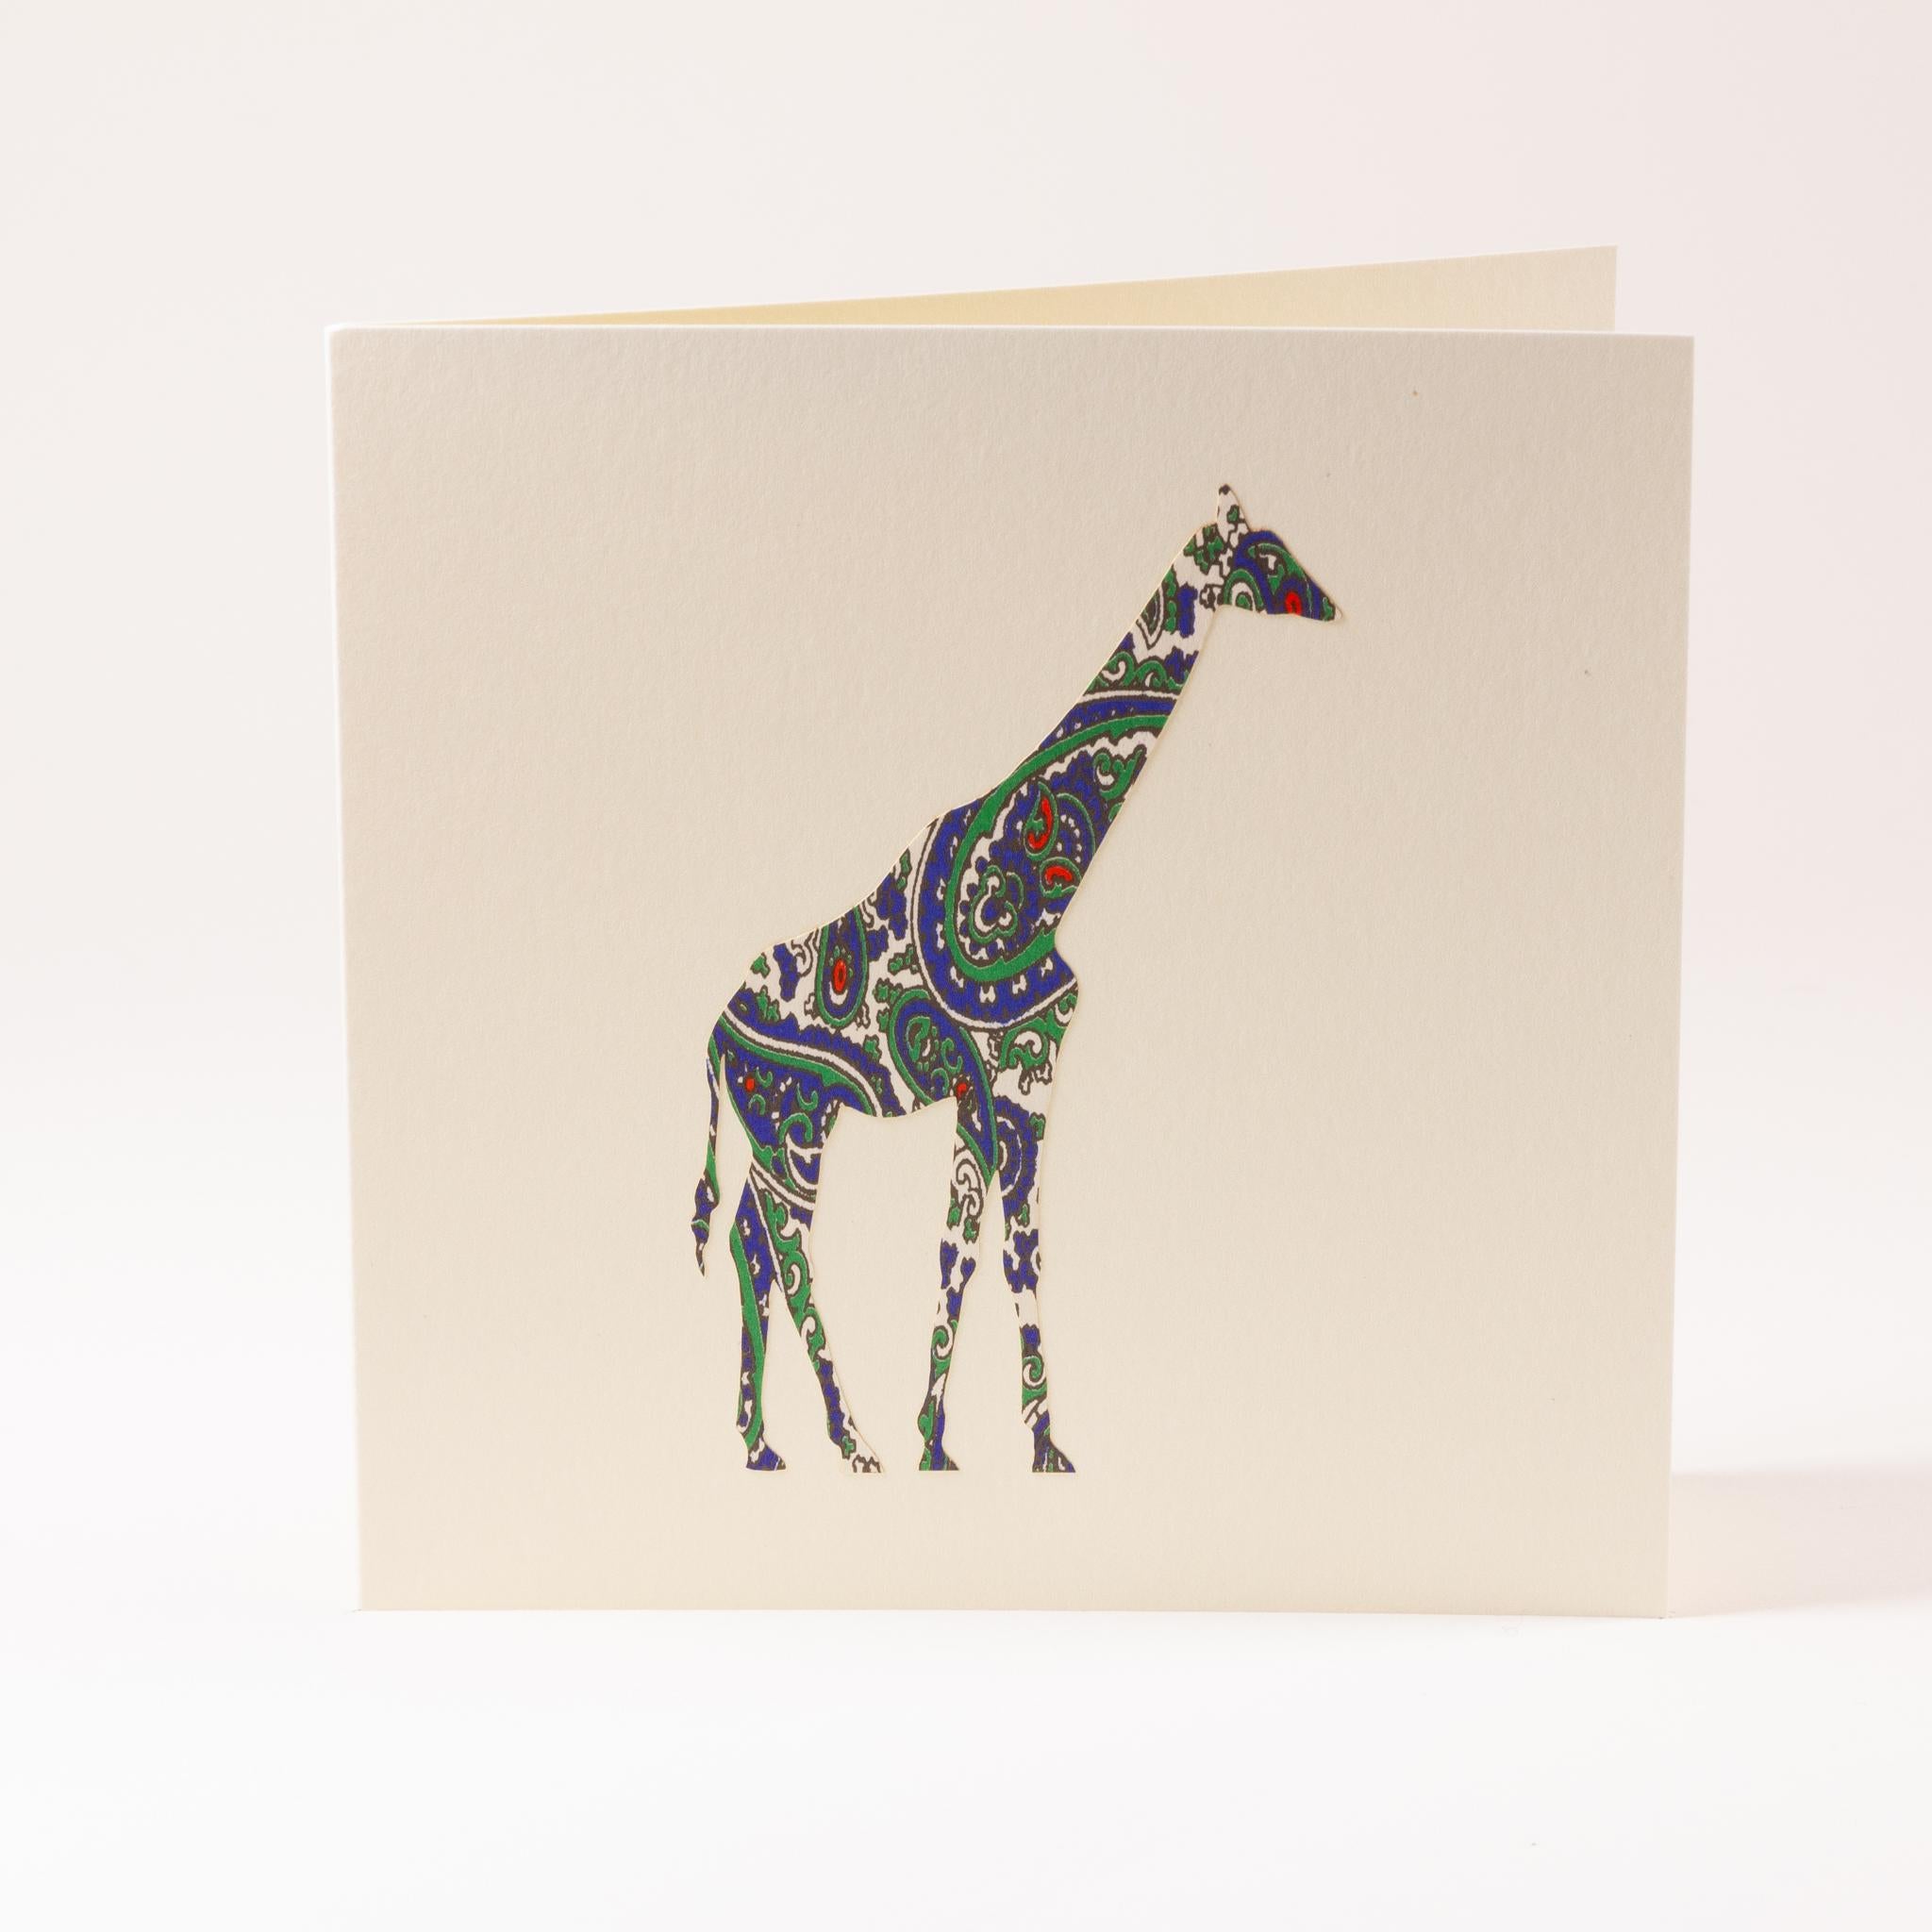 Grusskarte "Giraffe"